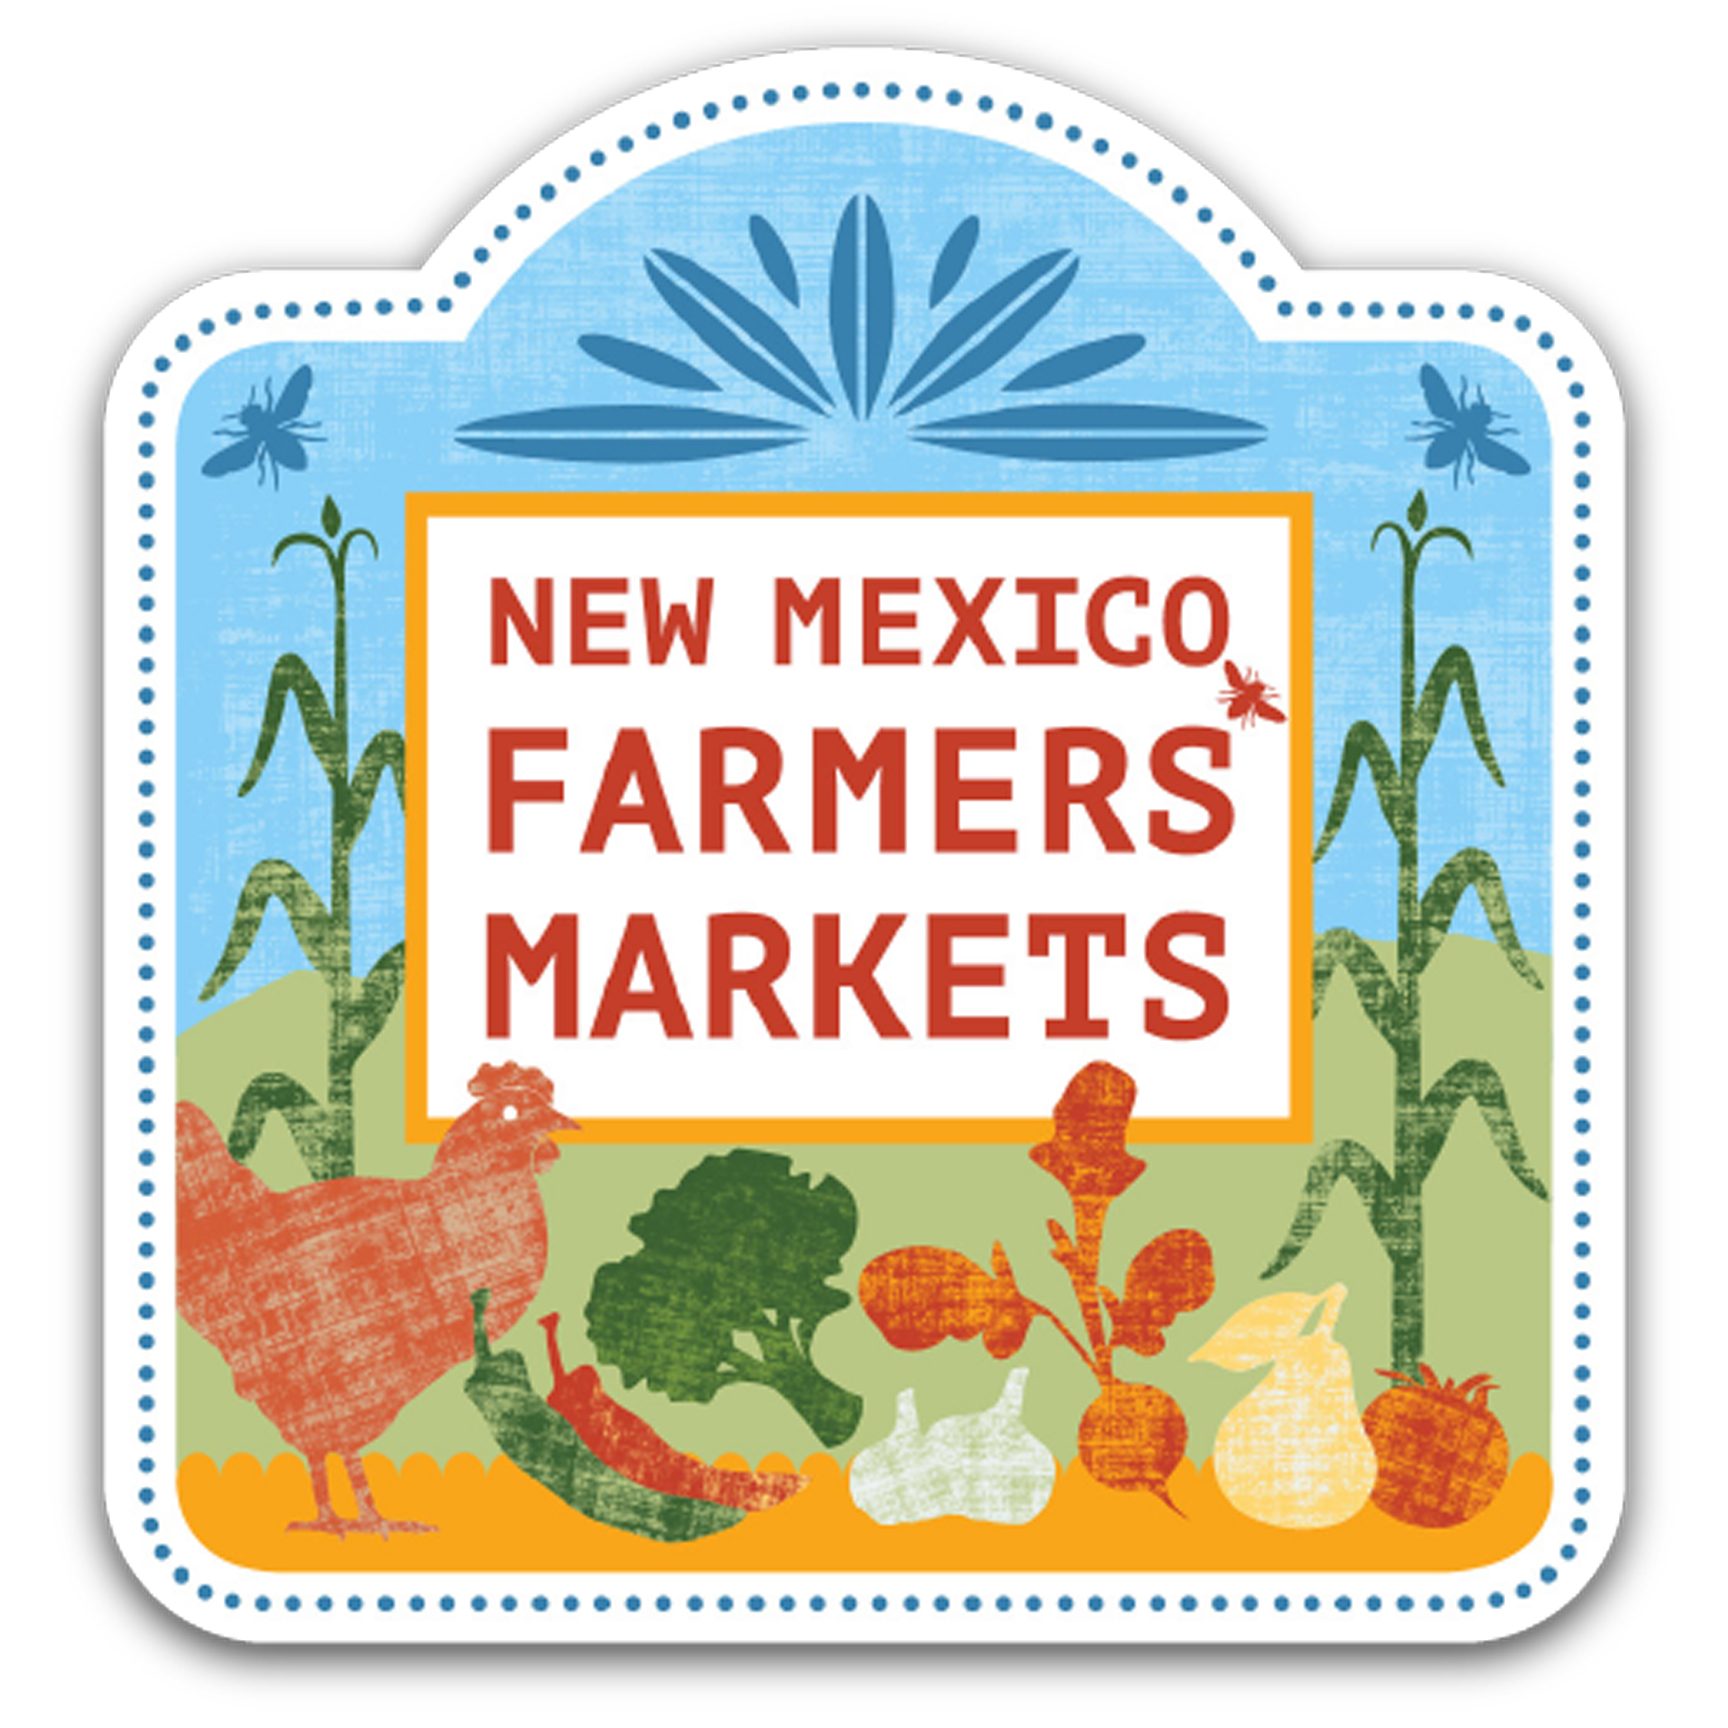 New Mexico Farmers Markets